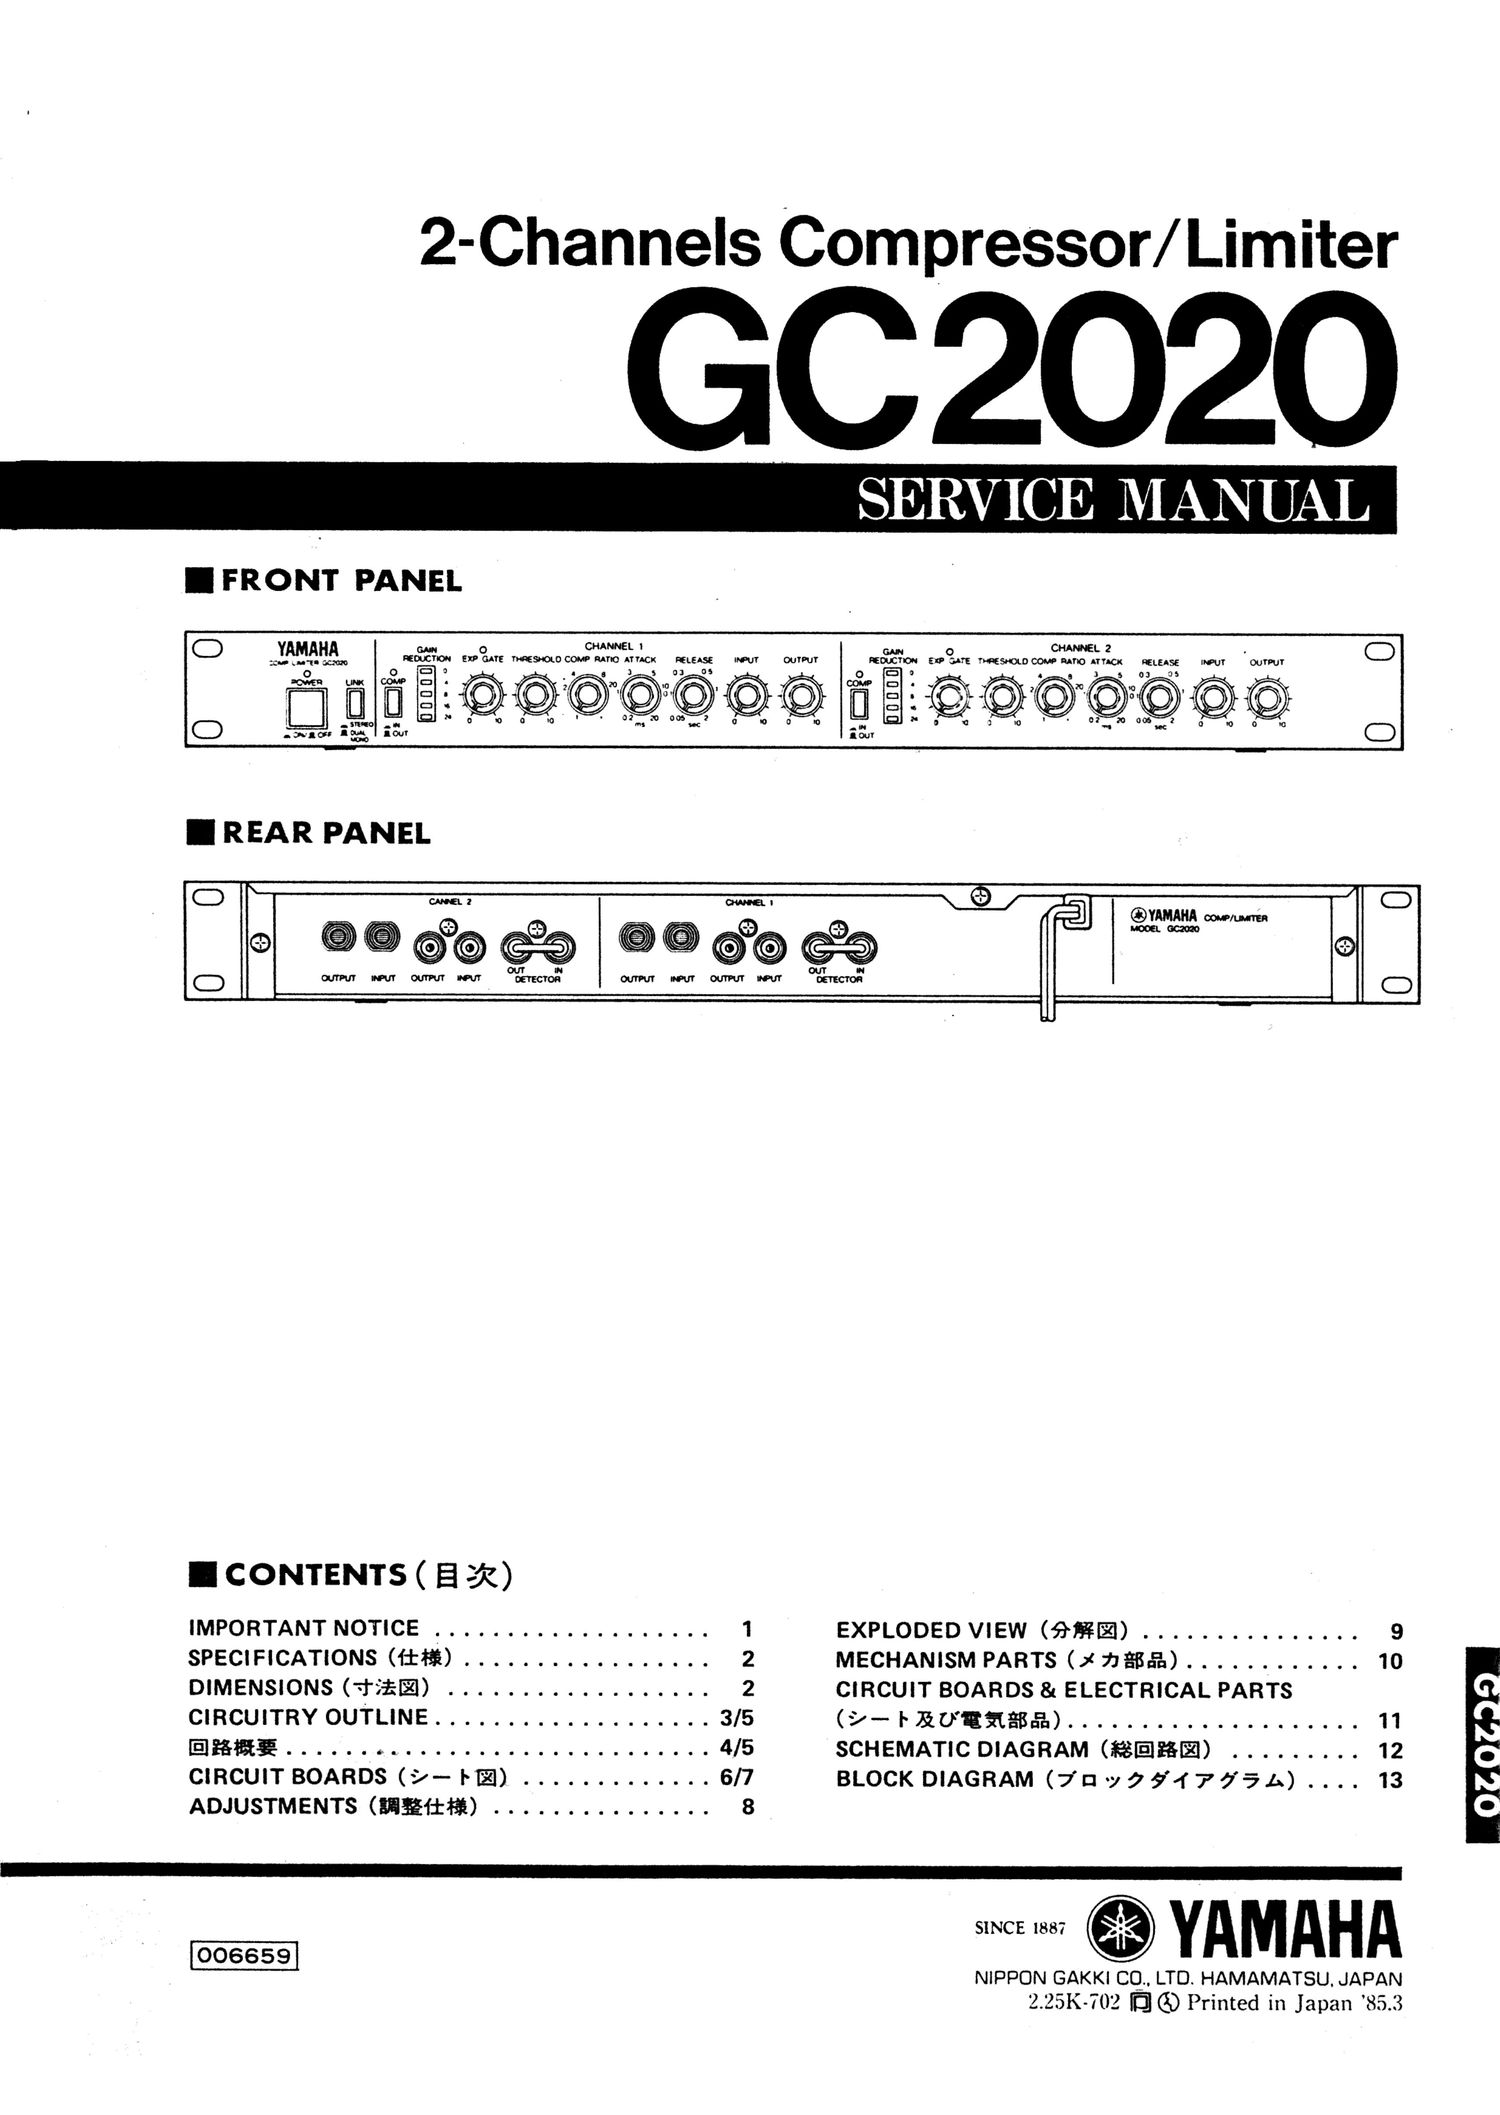 yamaha gc2020 compressor service manual